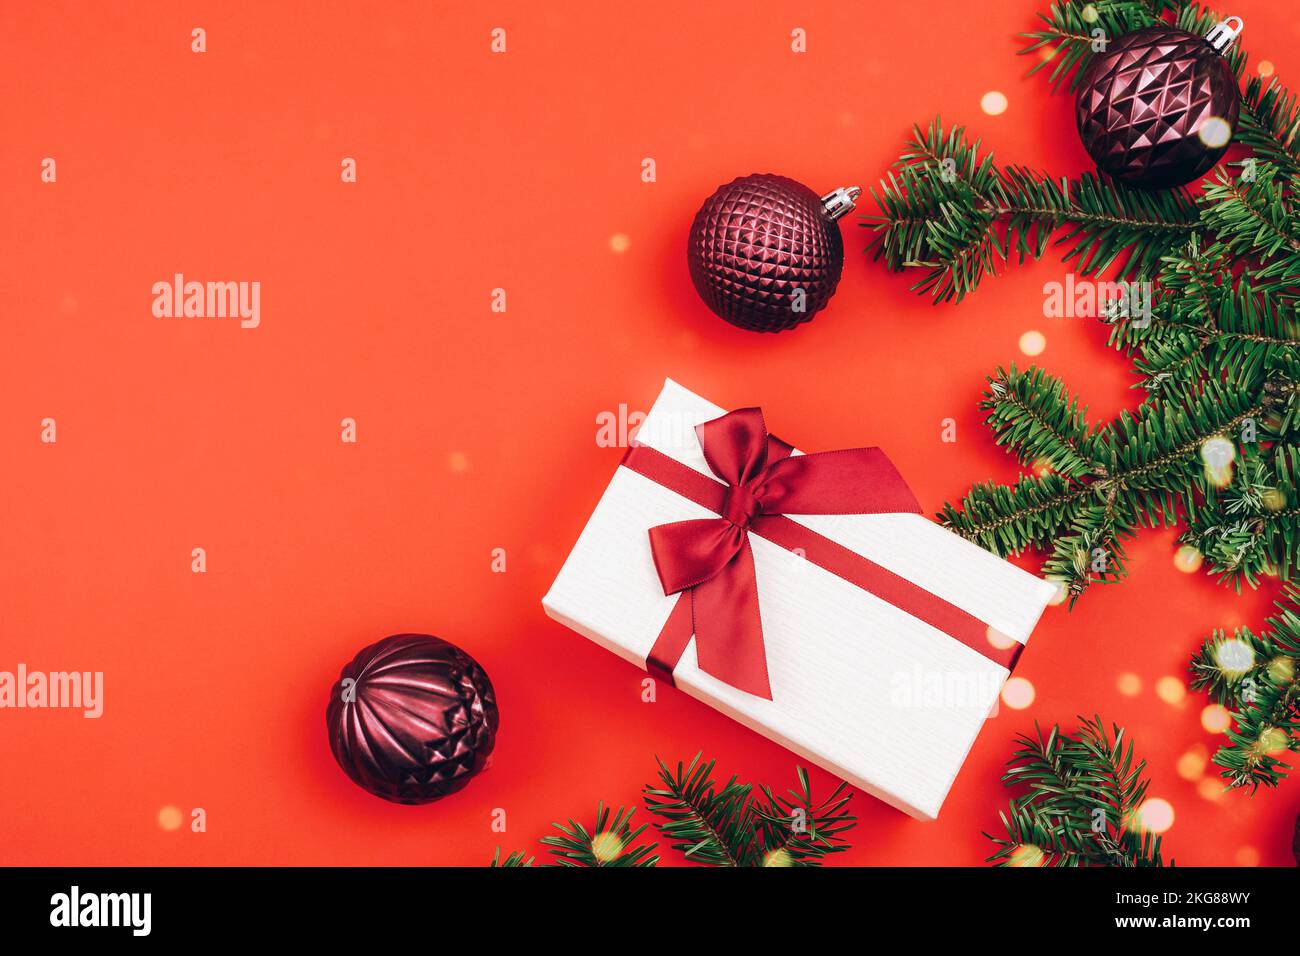 Scatola regalo e rami di abete con decorazioni natalizie su sfondo rosso. Concetto di vacanza invernale. Vista dall'alto, disposizione piatta, spazio di copia Foto Stock